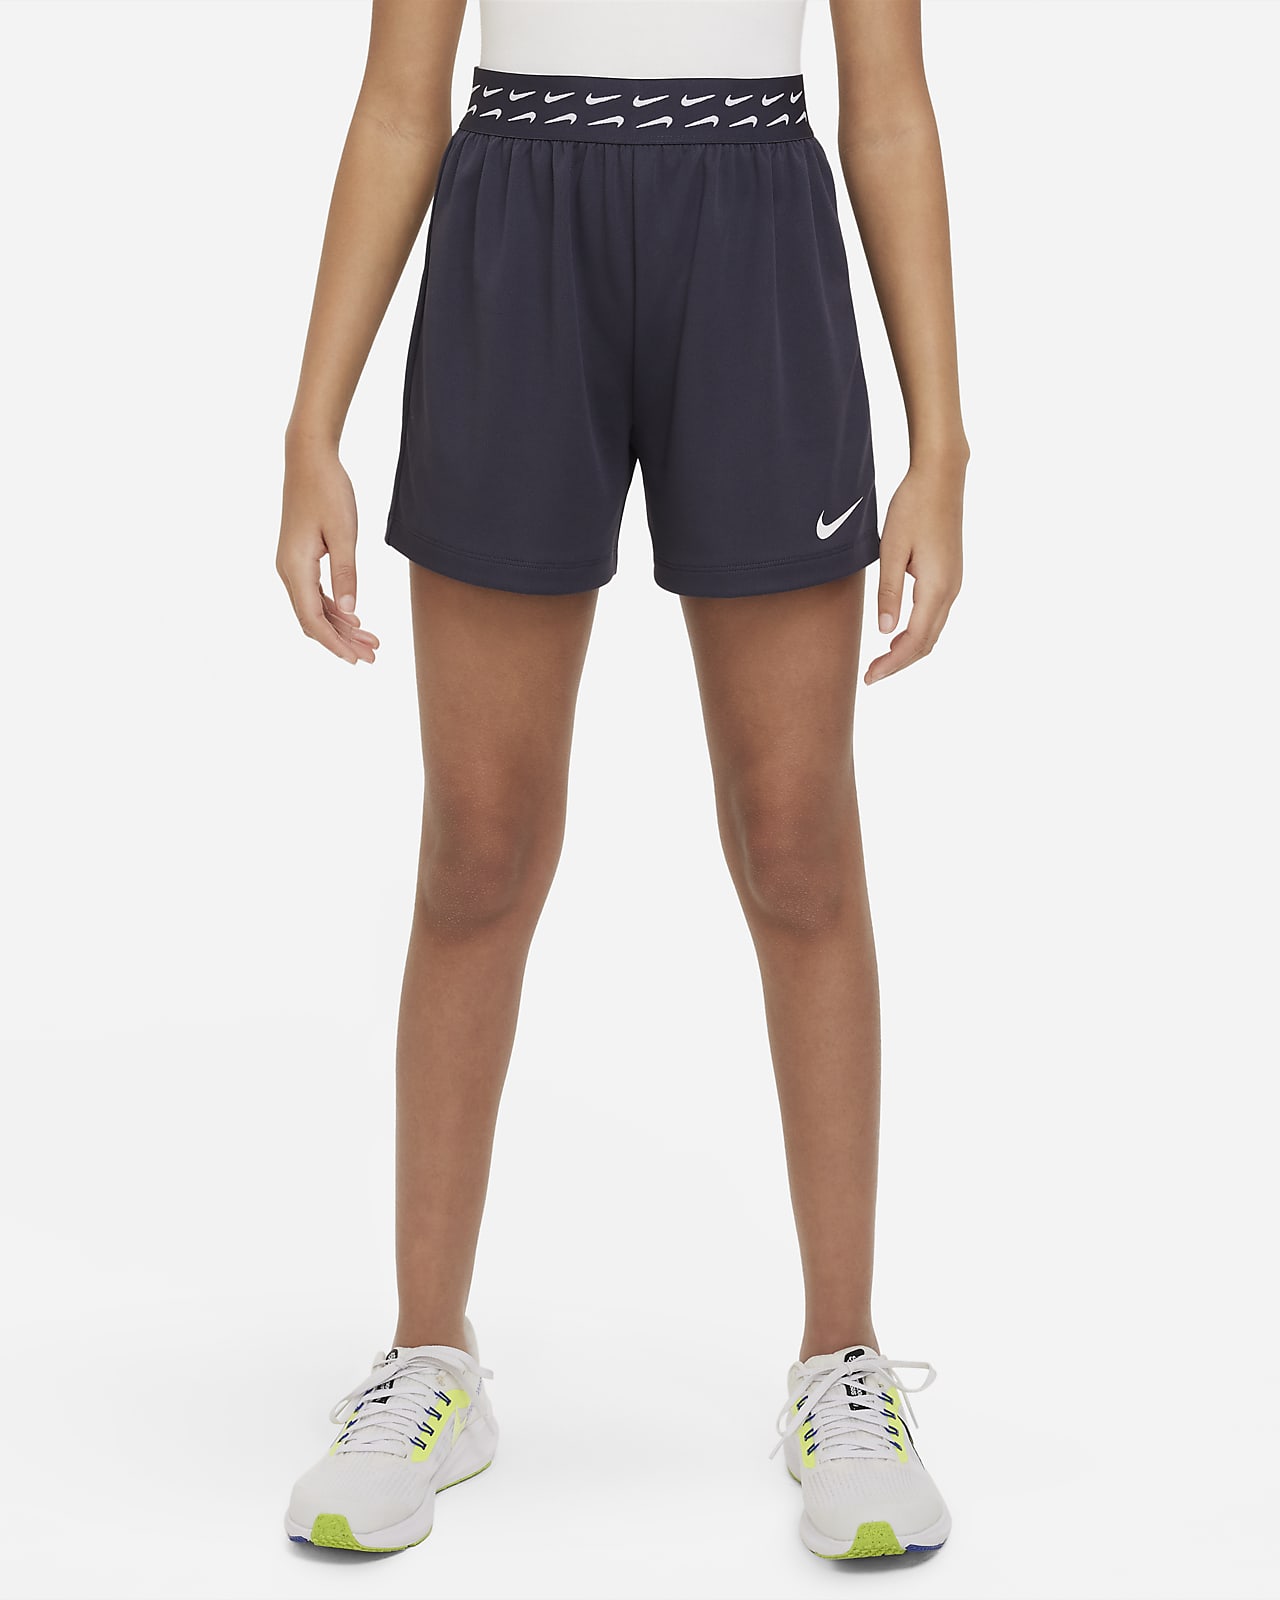 Girls Training & Gym Shorts. Nike AU